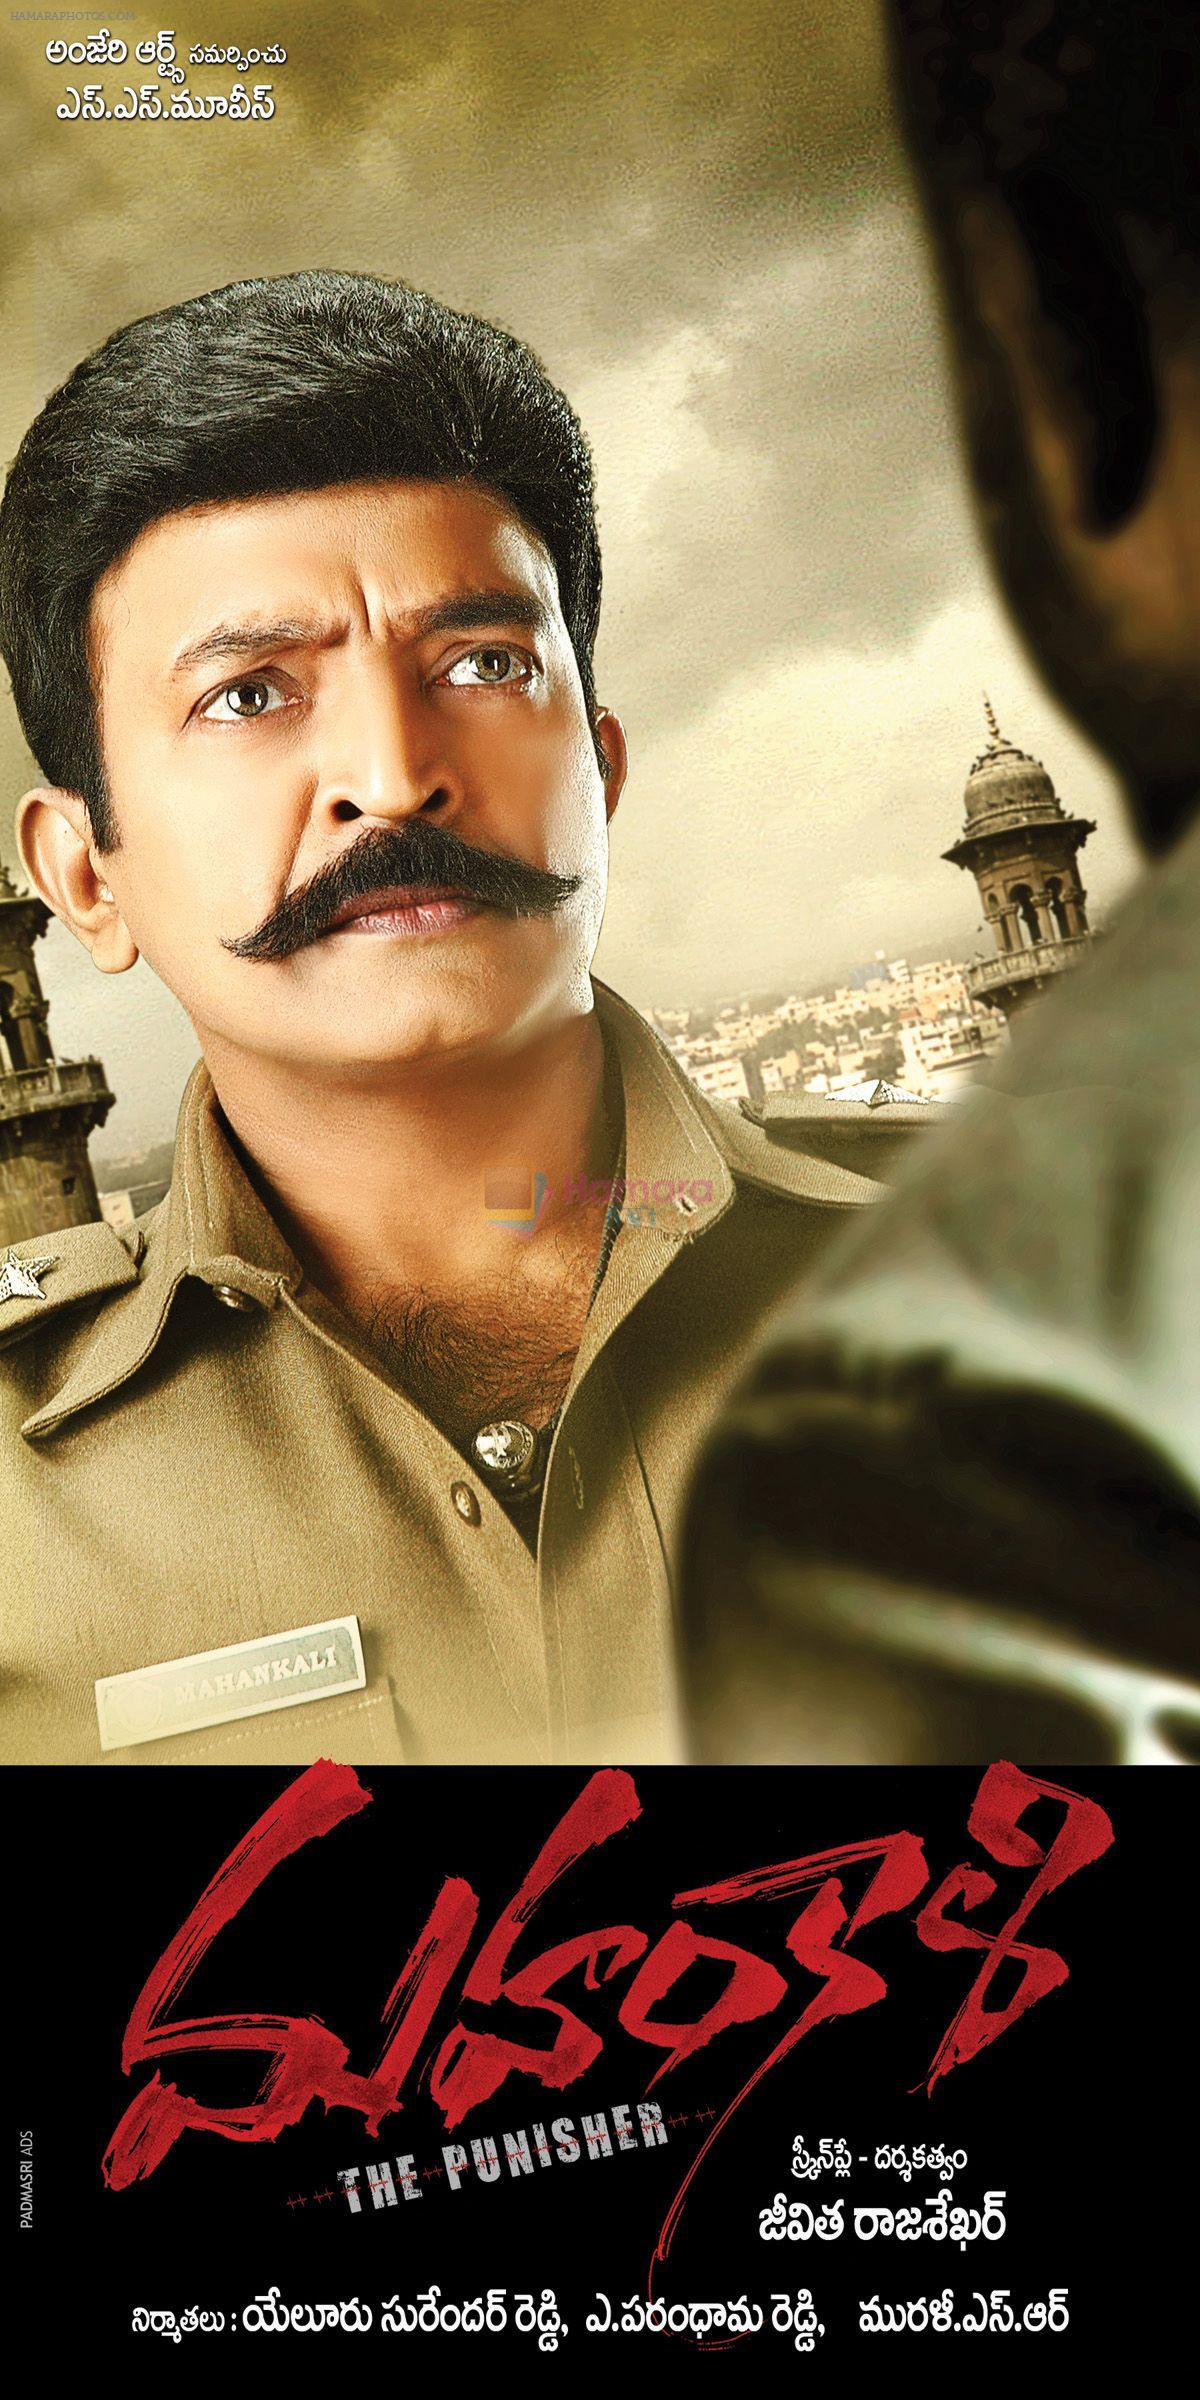 Mahankali Movie Poster and Wallpaper